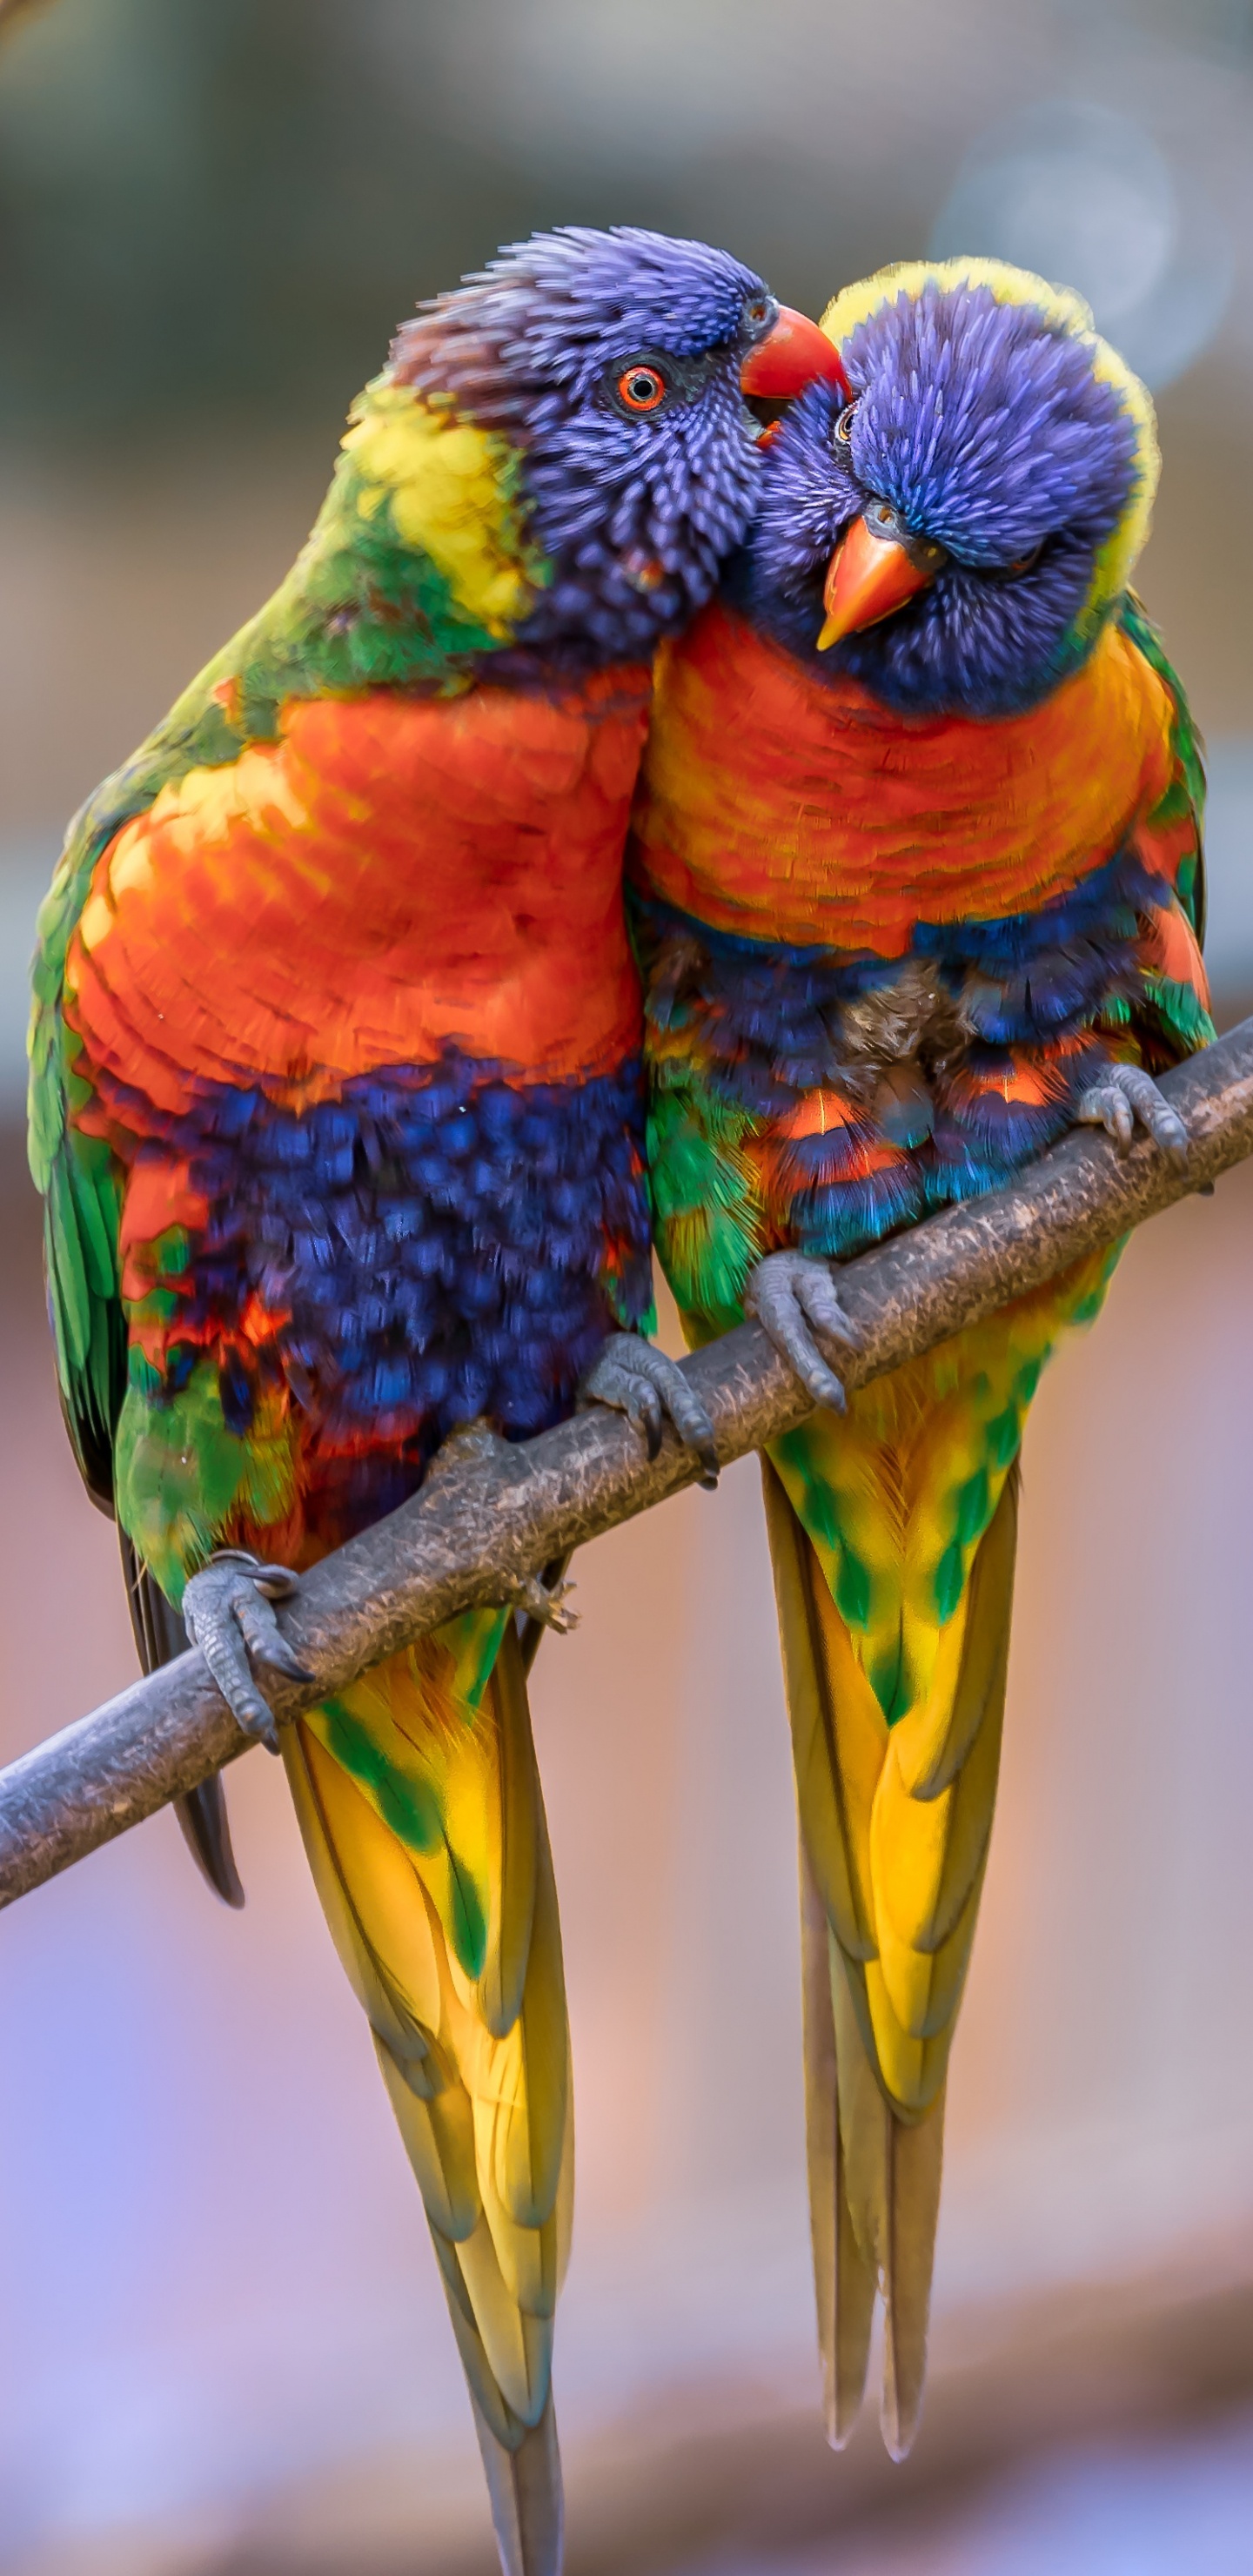 彩虹澳洲鹦鹉, 金刚鹦鹉, 鸟, 澳洲鹦鹉, 鹦鹉 壁纸 1440x2960 允许